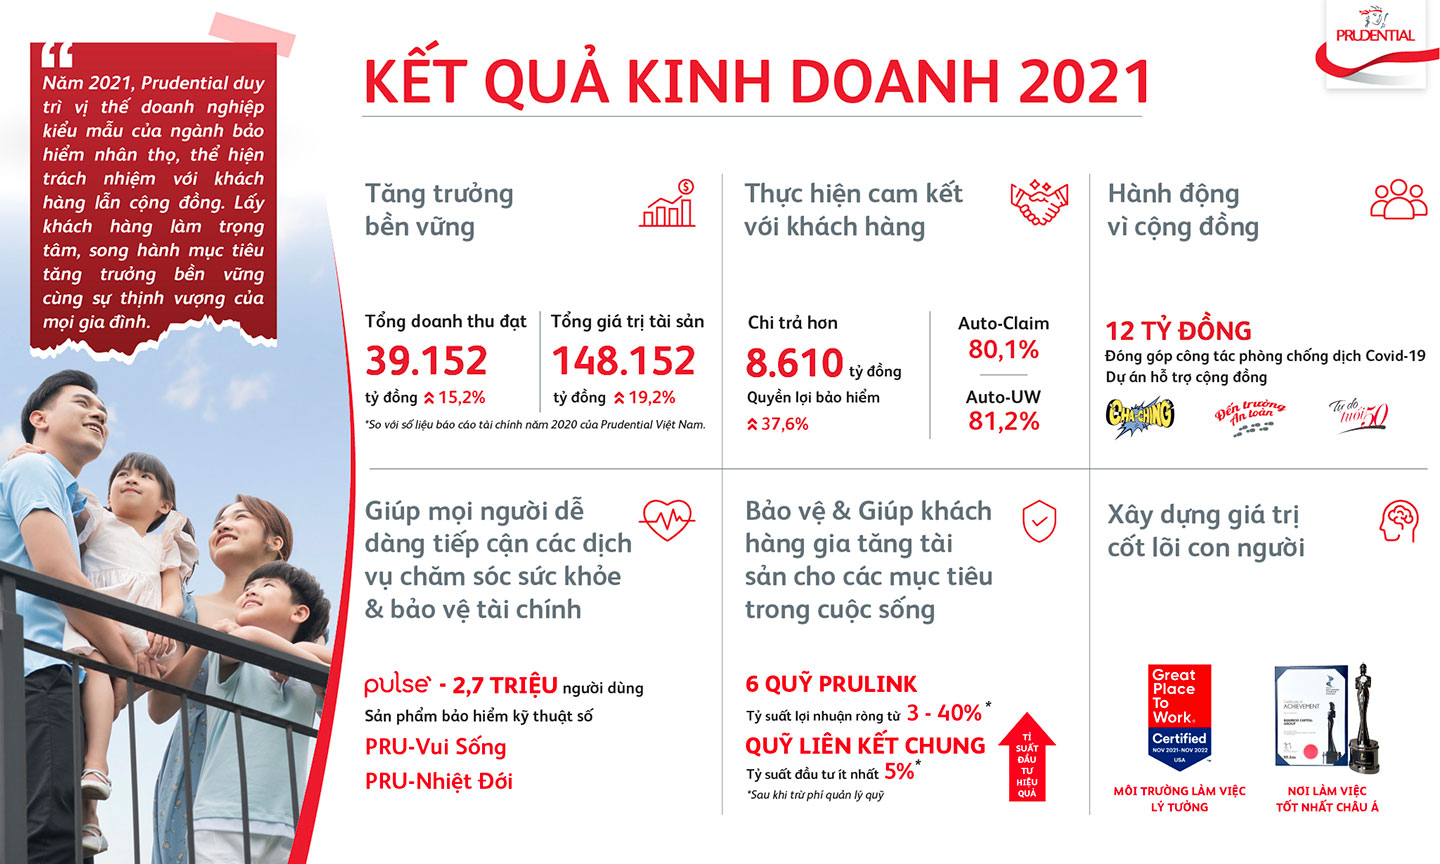 Kết quả kinh doanh 2021 của Prudential Việt Nam tăng trưởng ấn tượng.